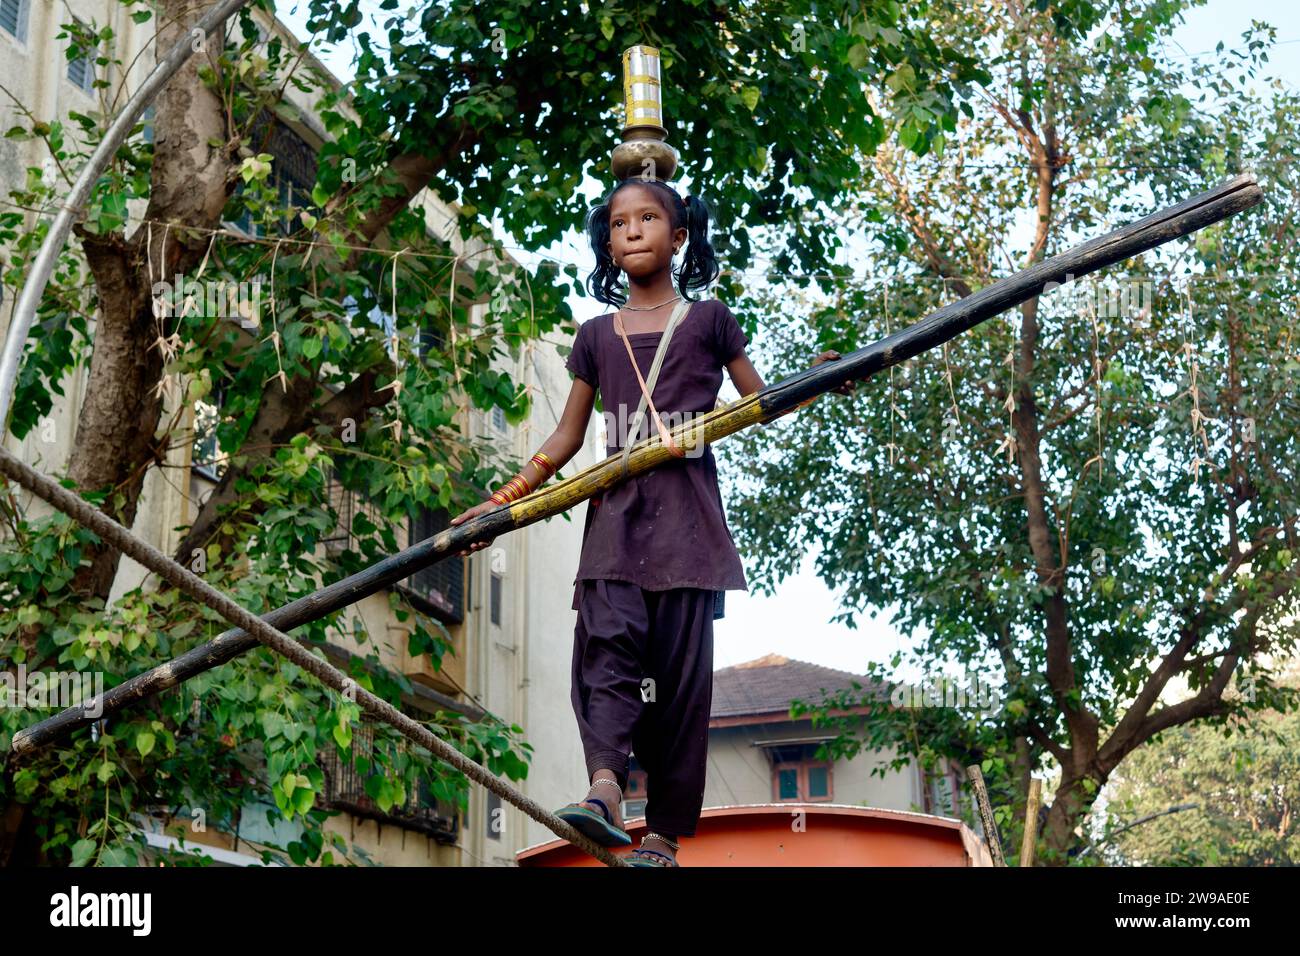 Dans un spectacle de rue ou tamasha, une jeune fille indienne marche sur une corde raide, avec la difficulté supplémentaire d'équilibrer des vaisseaux sur sa tête ; Mumbai, Inde Banque D'Images